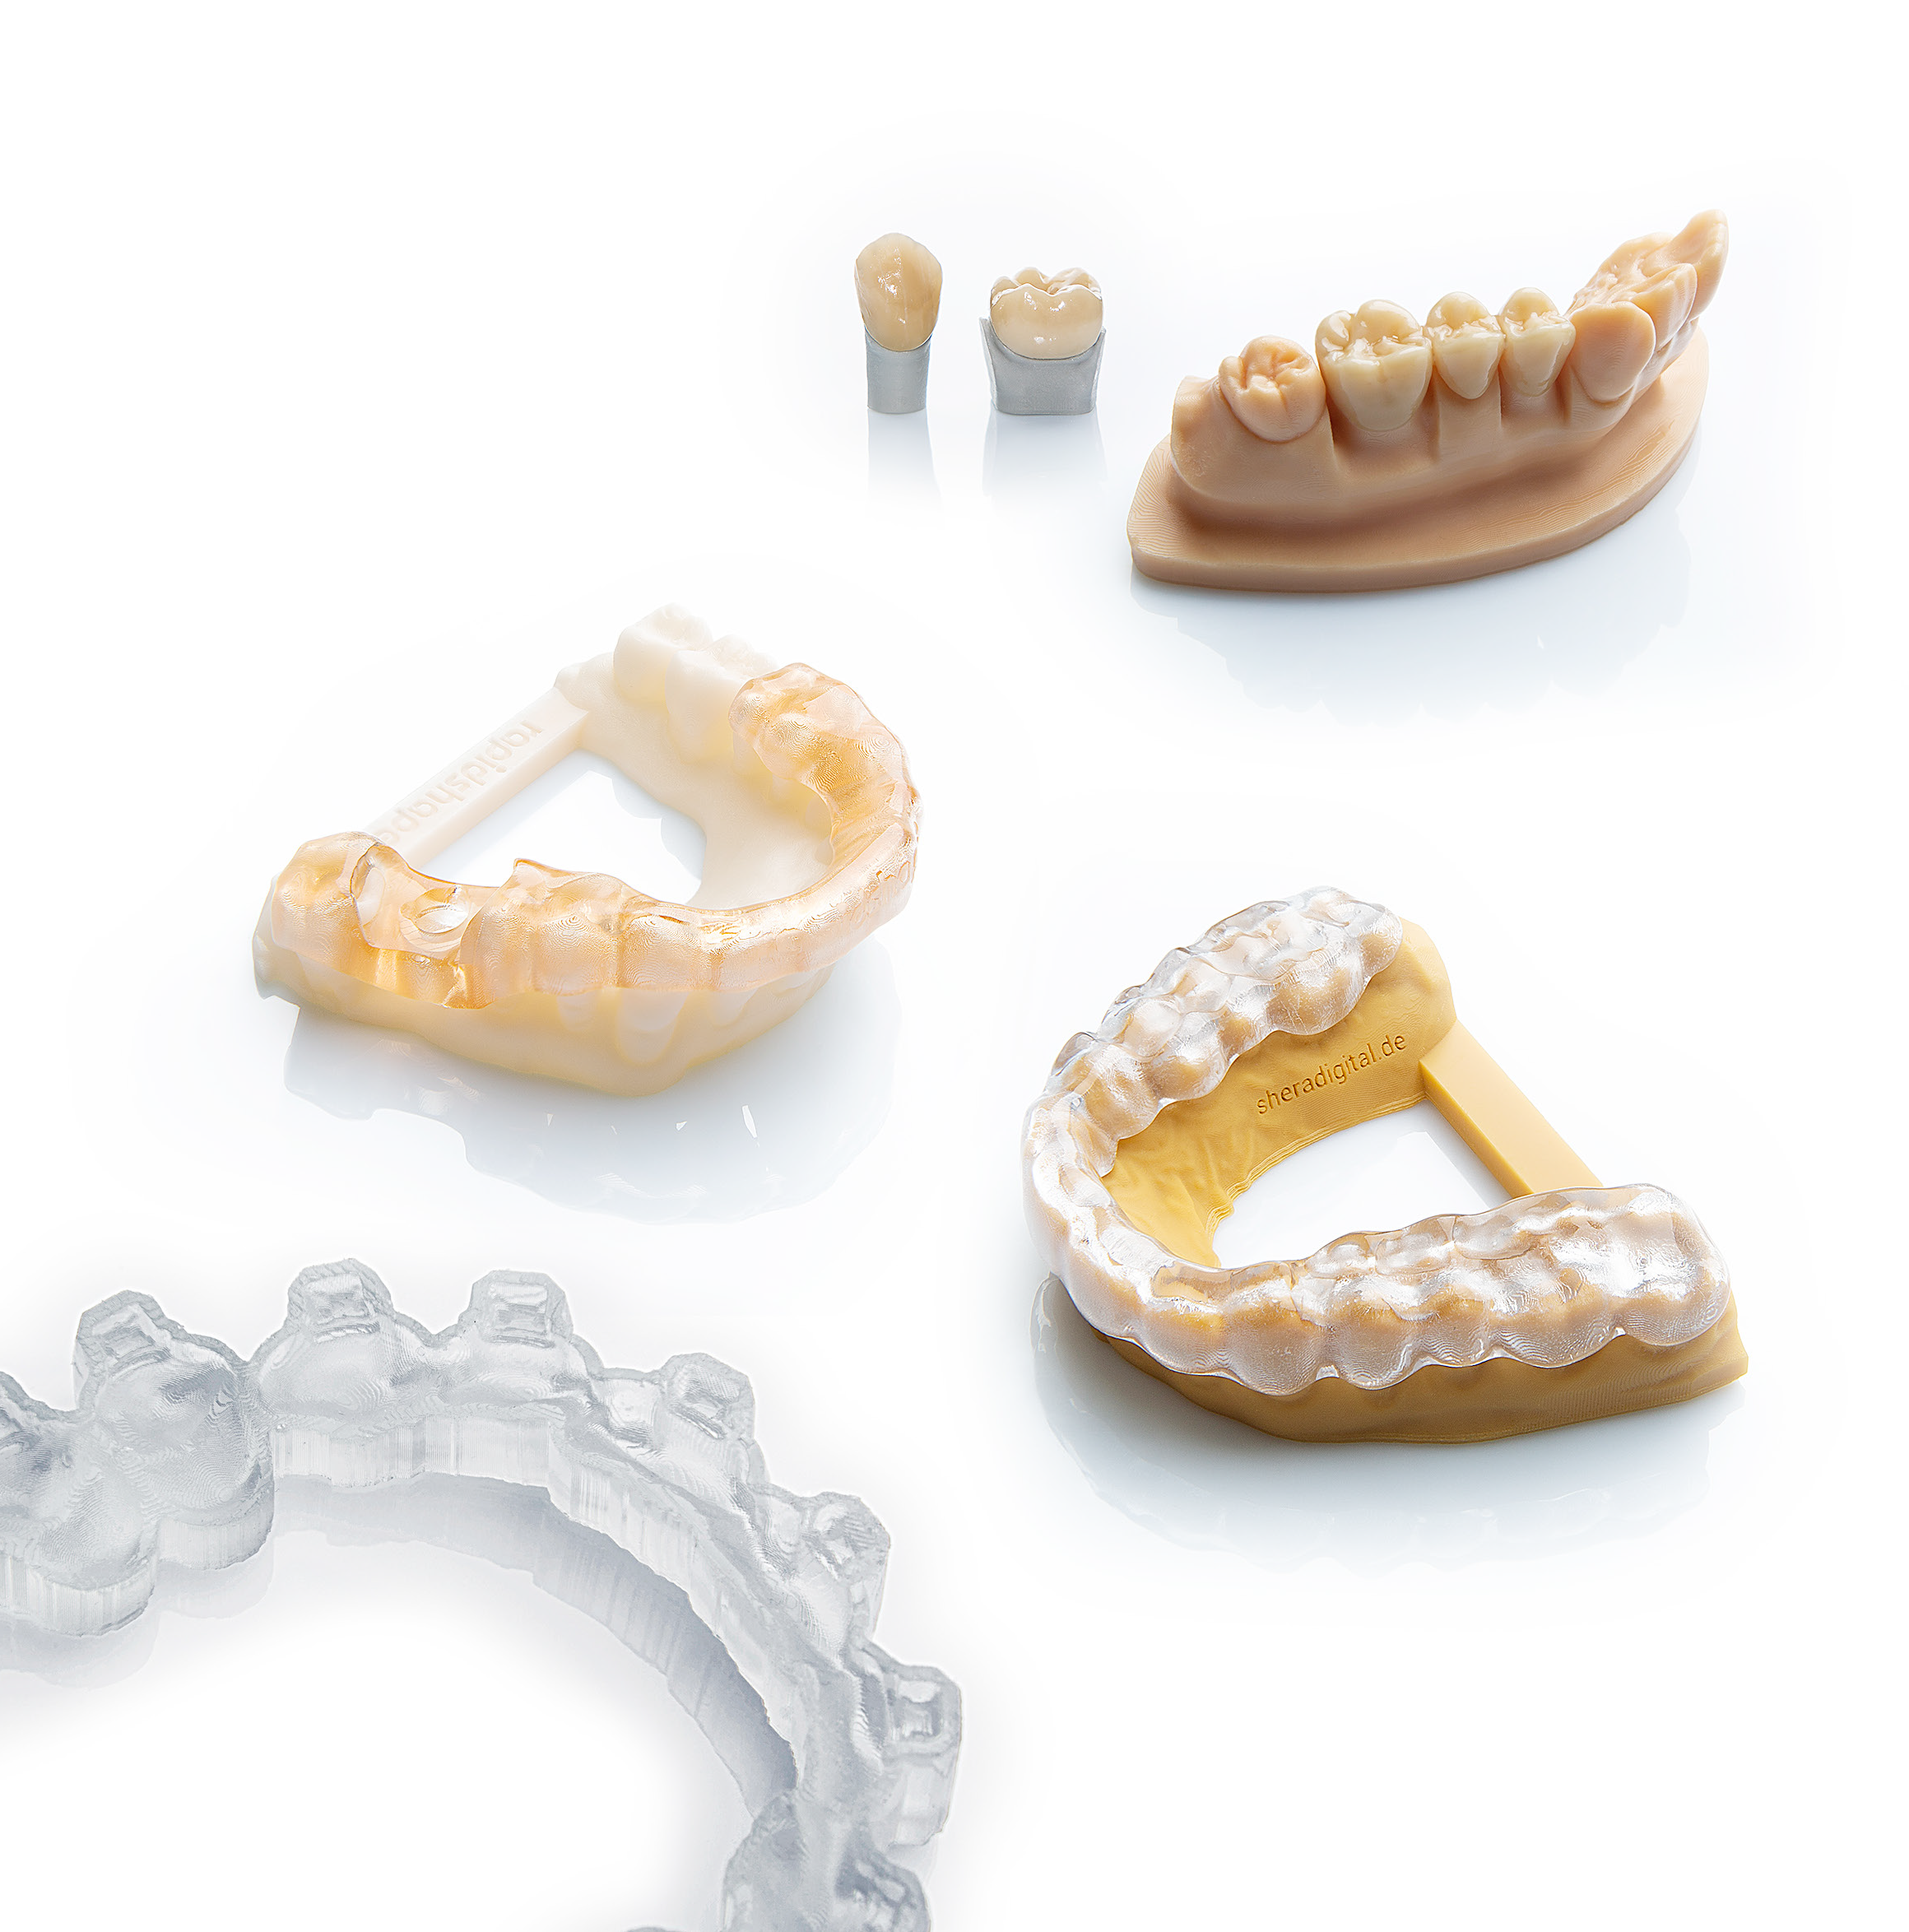 rapidshape dental 3d printers applications section 2